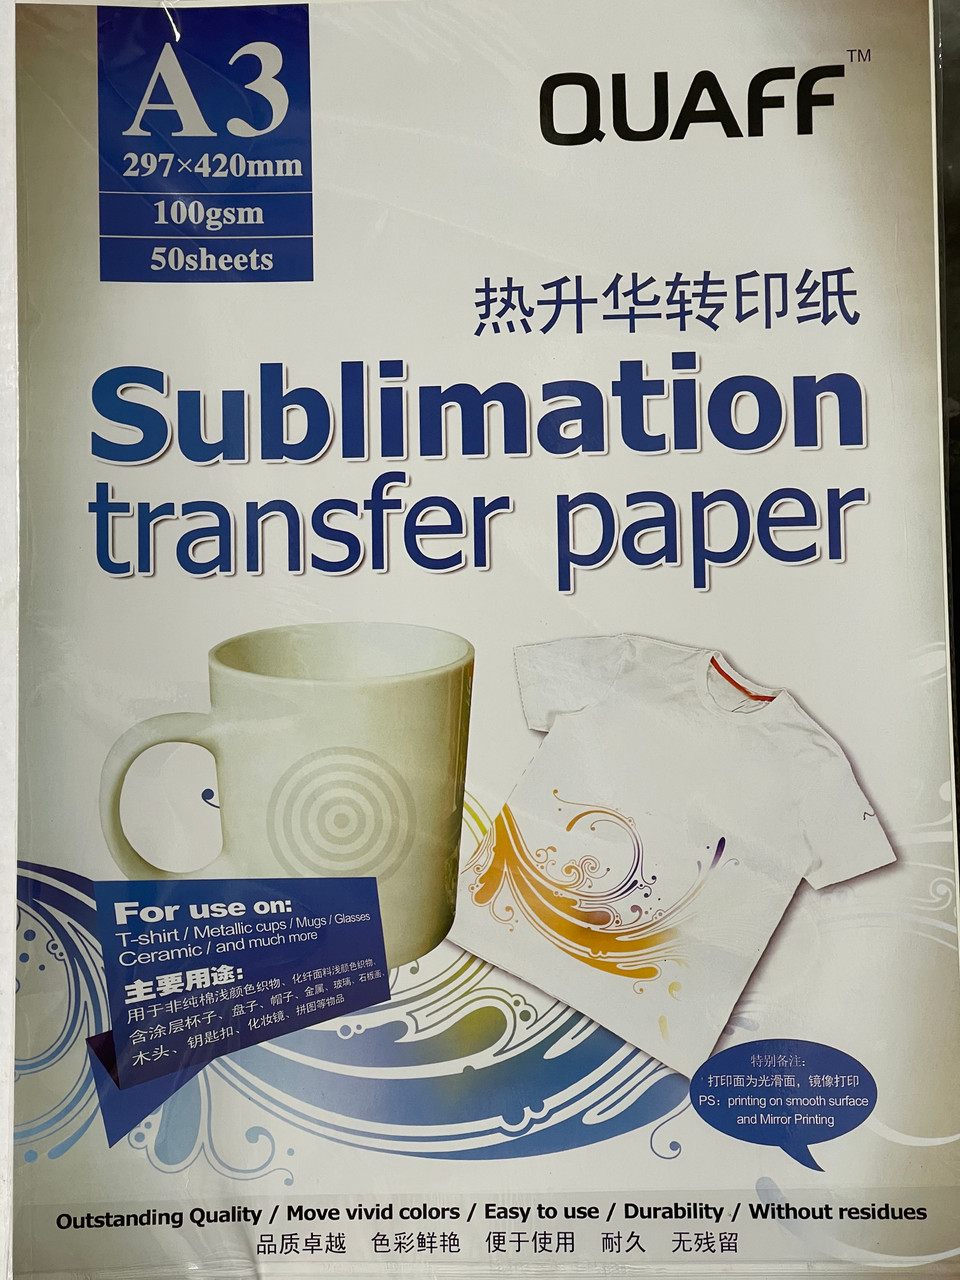 Papier sublimation A4 - 100 feuilles rose